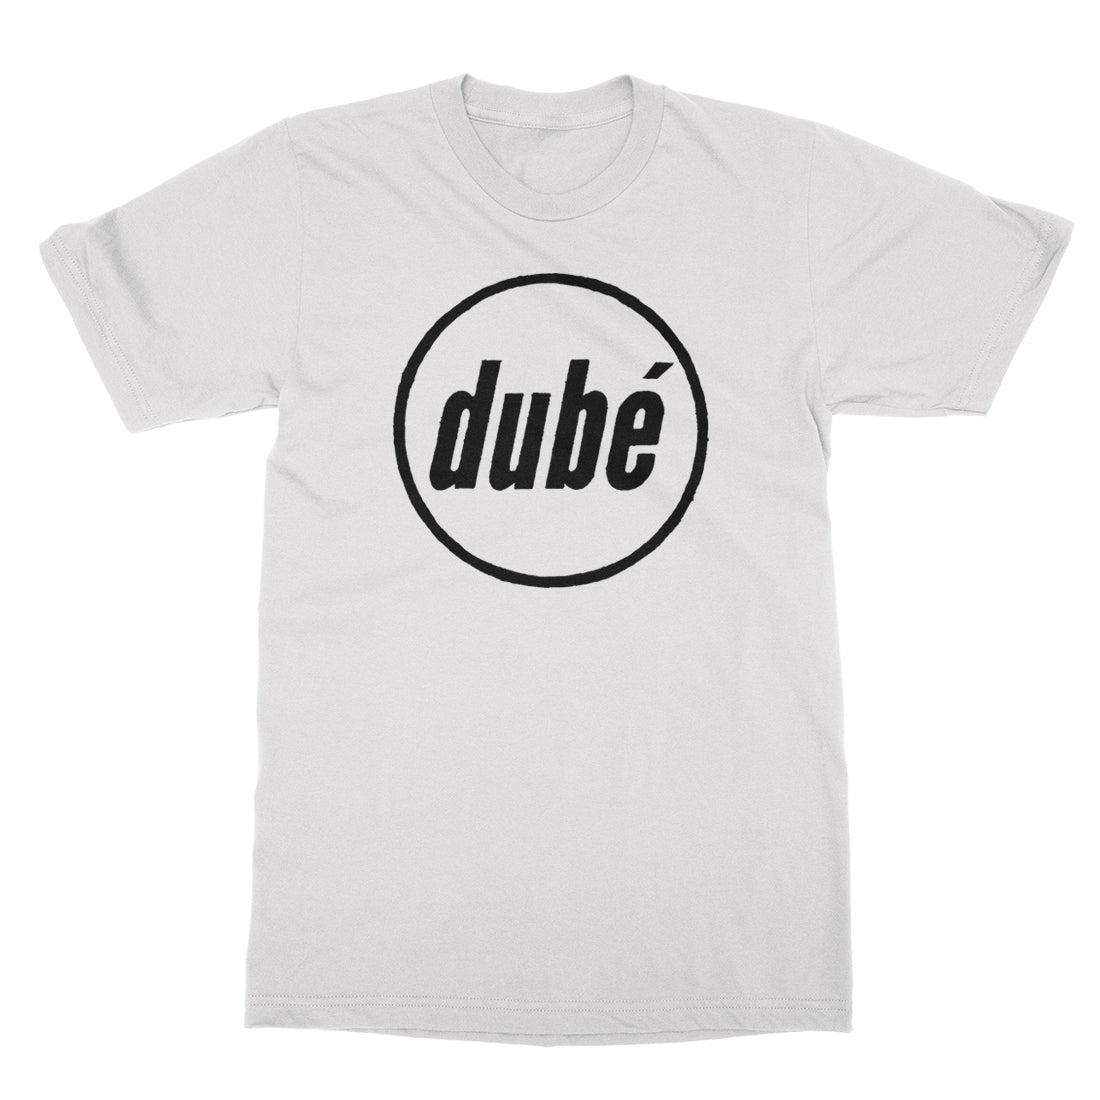 Dube - Logo - White Tee